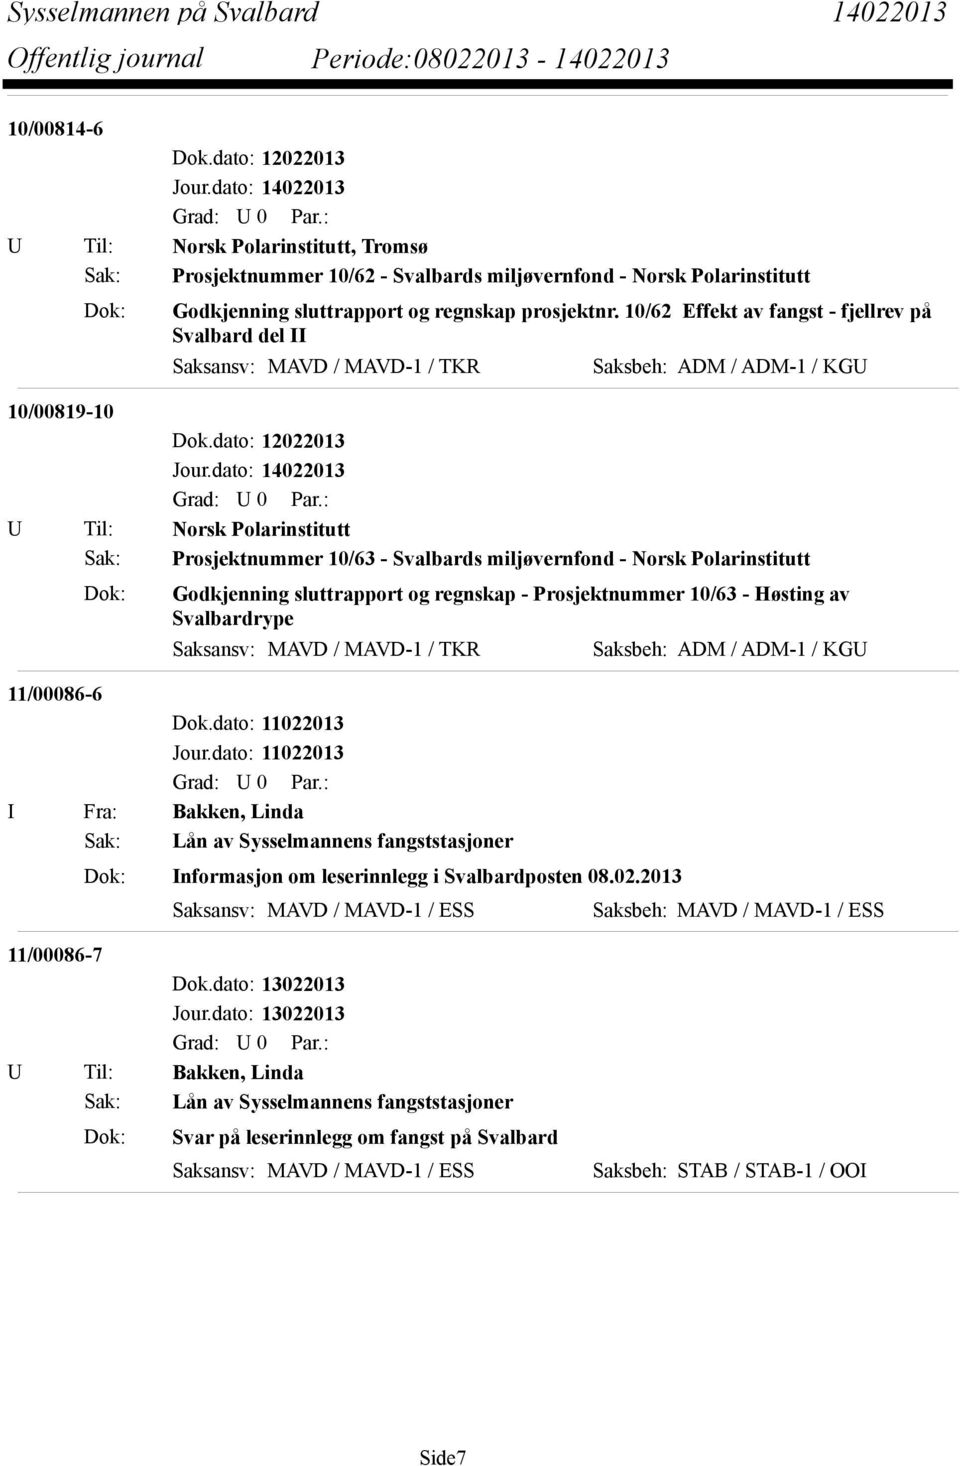 miljøvernfond - Norsk Polarinstitutt Dok: Godkjenning sluttrapport og regnskap - Prosjektnummer 10/63 - Høsting av Svalbardrype Saksansv: MAVD / MAVD-1 / TKR Saksbeh: ADM / ADM-1 / KGU 11/00086-6 I